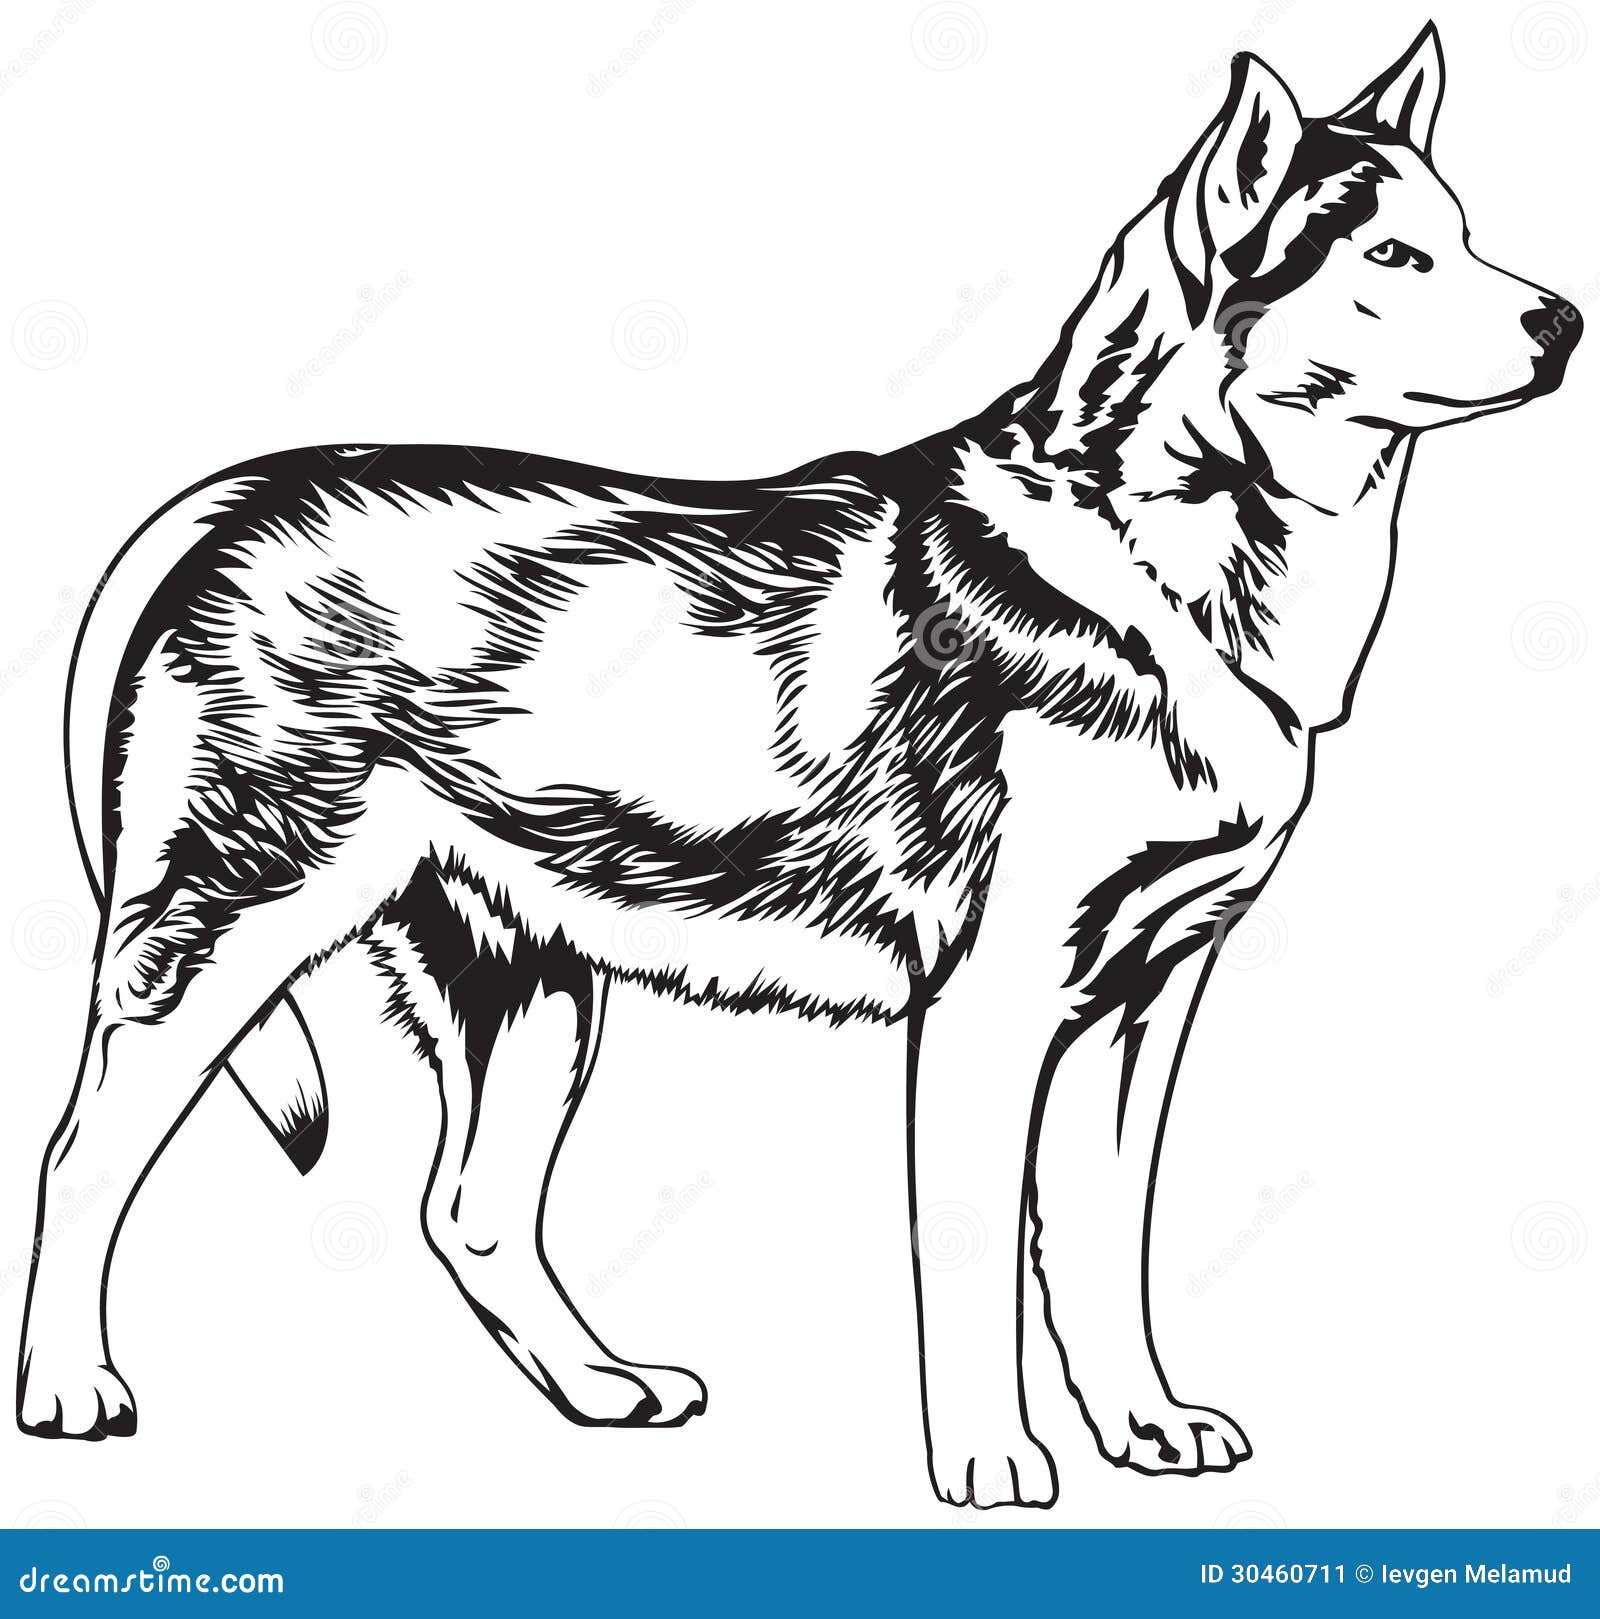 Husky dog breed vector illustration, dog show sign symbol set. Dogs of ...